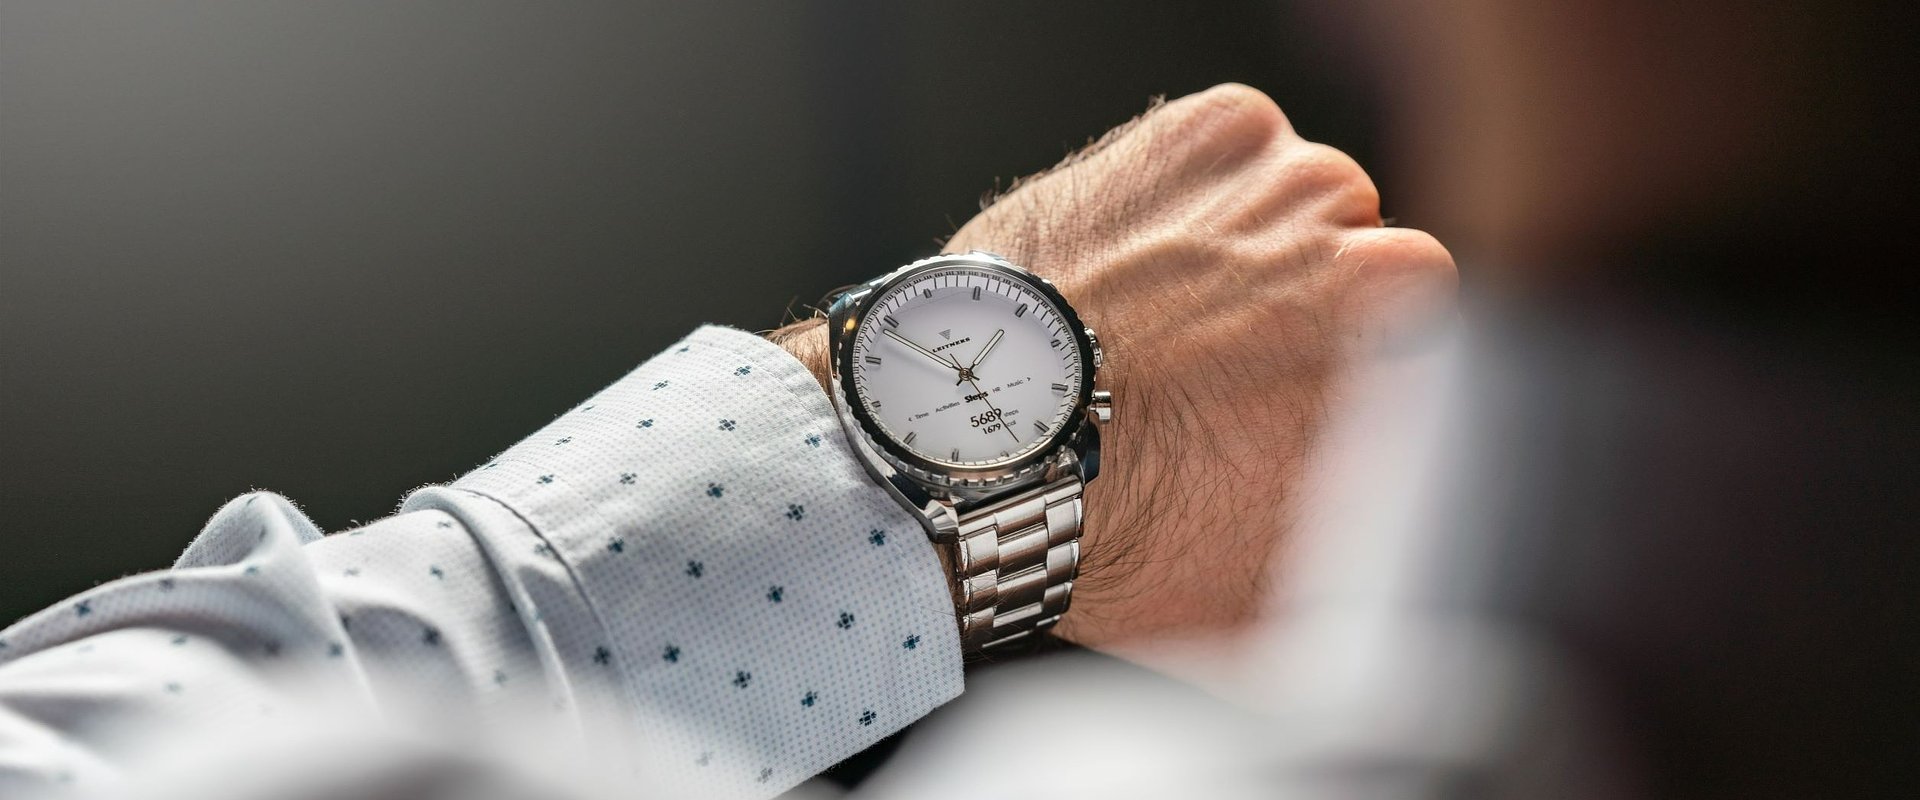 Leitners představí na veletrhu SEW Prague 2021 své mechanické chytré hodinky